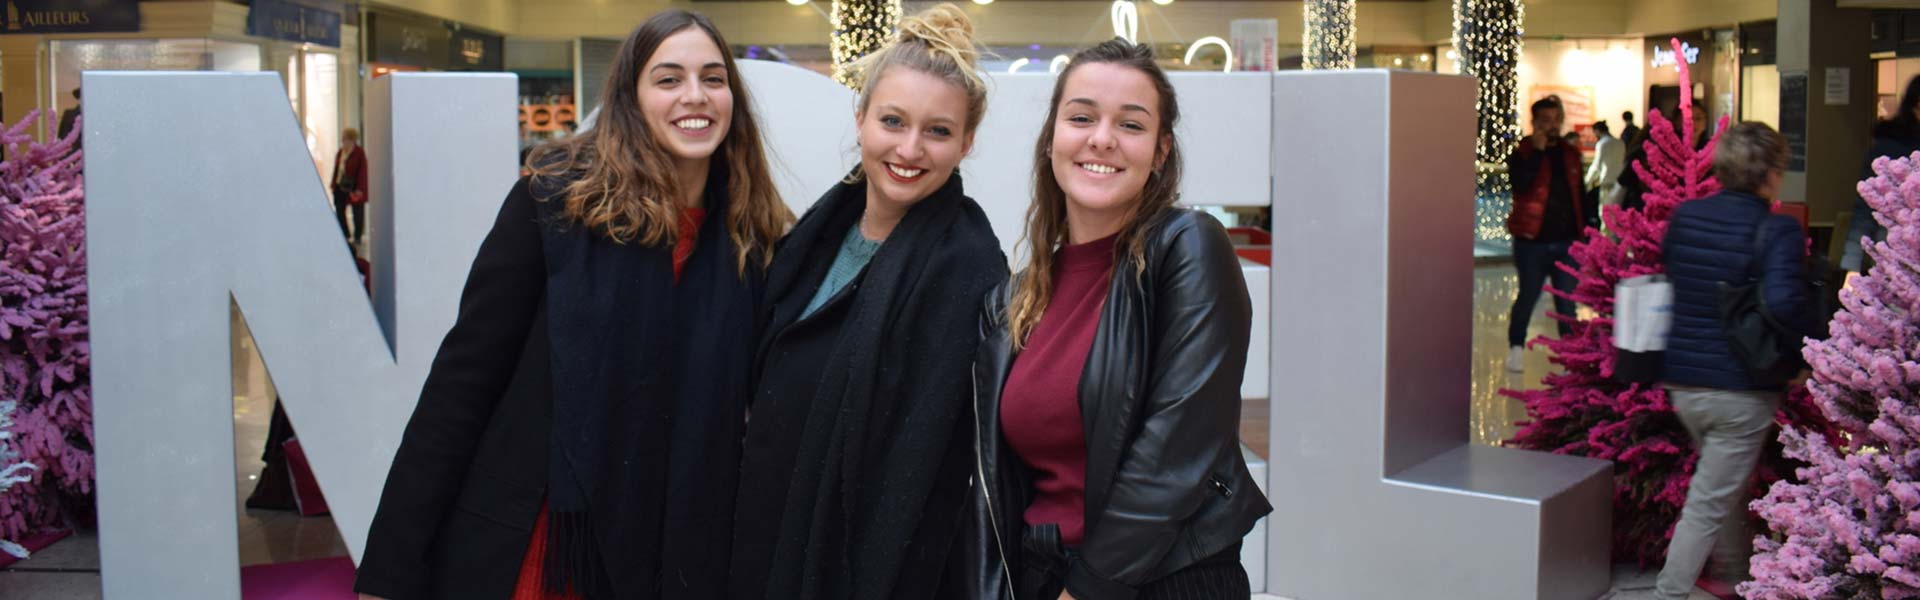 Trois femmes se font photographier par une borne photo devant un décor de noël dans un centre commercial